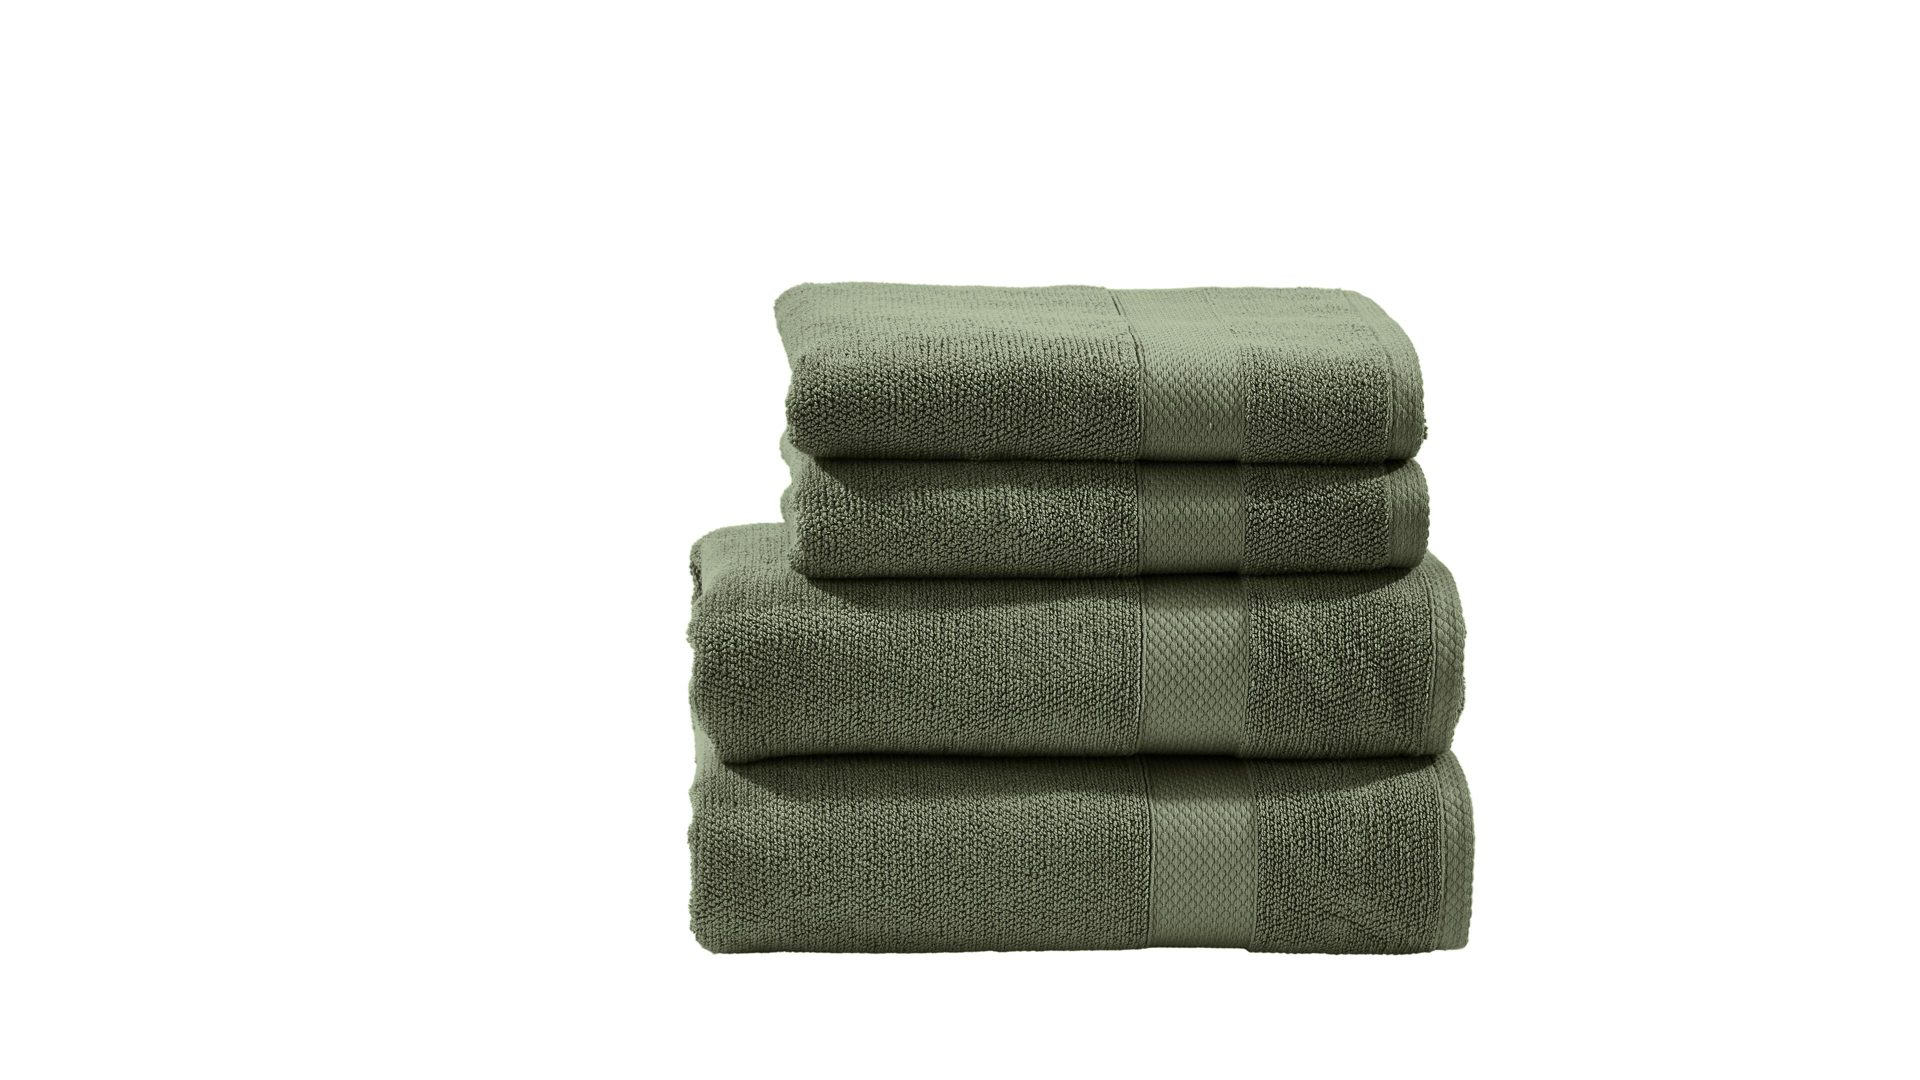 Handtuch-Set Done® be different aus Stoff in Dunkelgrün DONE® Handtuch-Set Deluxe khakifarbene Baumwolle – vierteilig